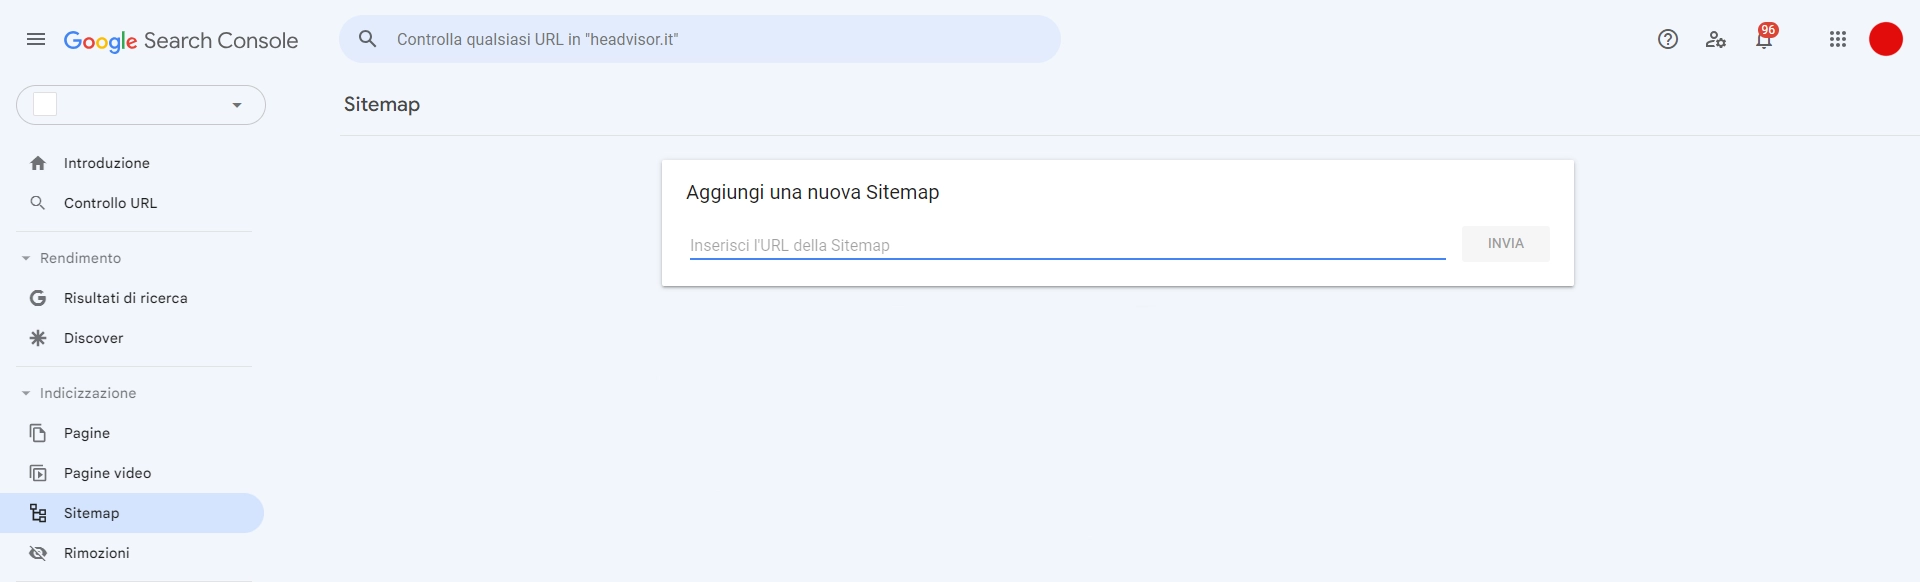 Come impostare Google Search Console: 4. Comunica la nuova Sitemap a Google - SEO Brescia